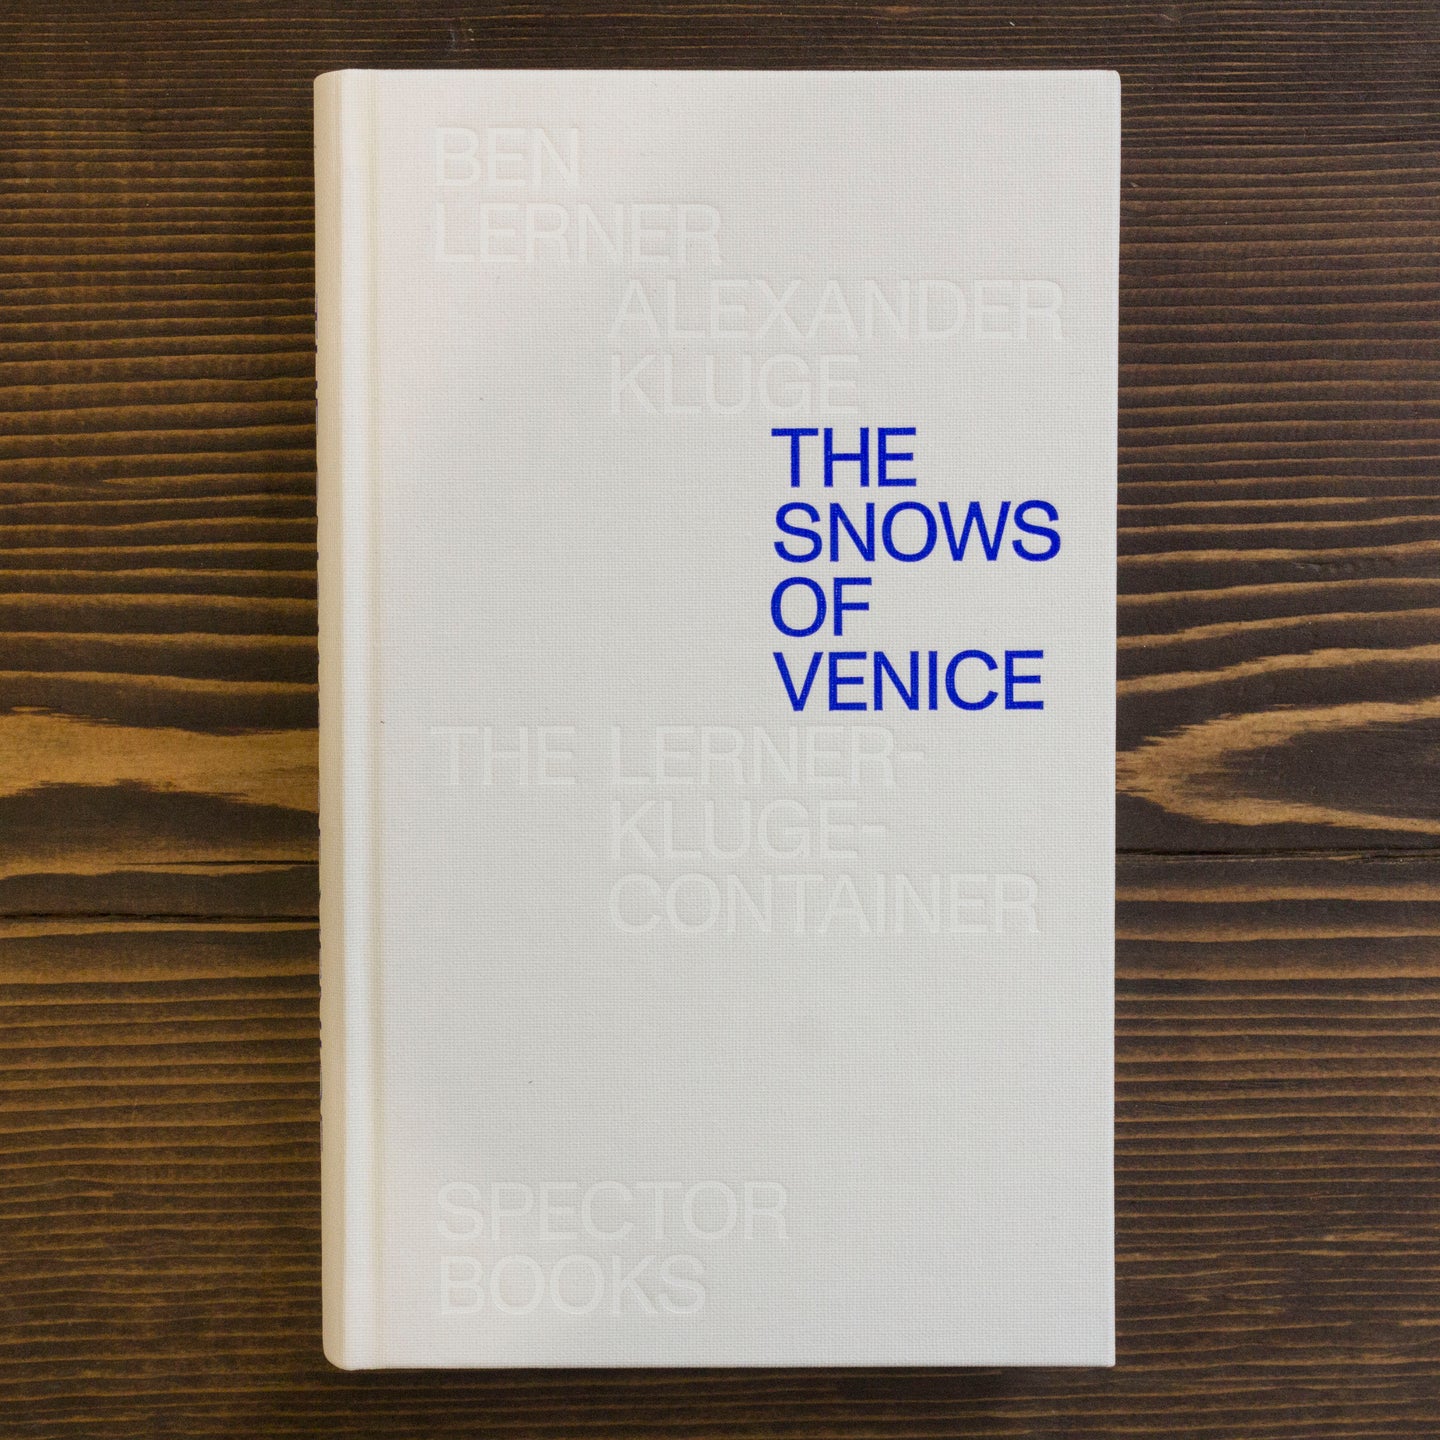 THE SNOWS OF VENICE - BEN LERNER, ALEXANDER KLUGE